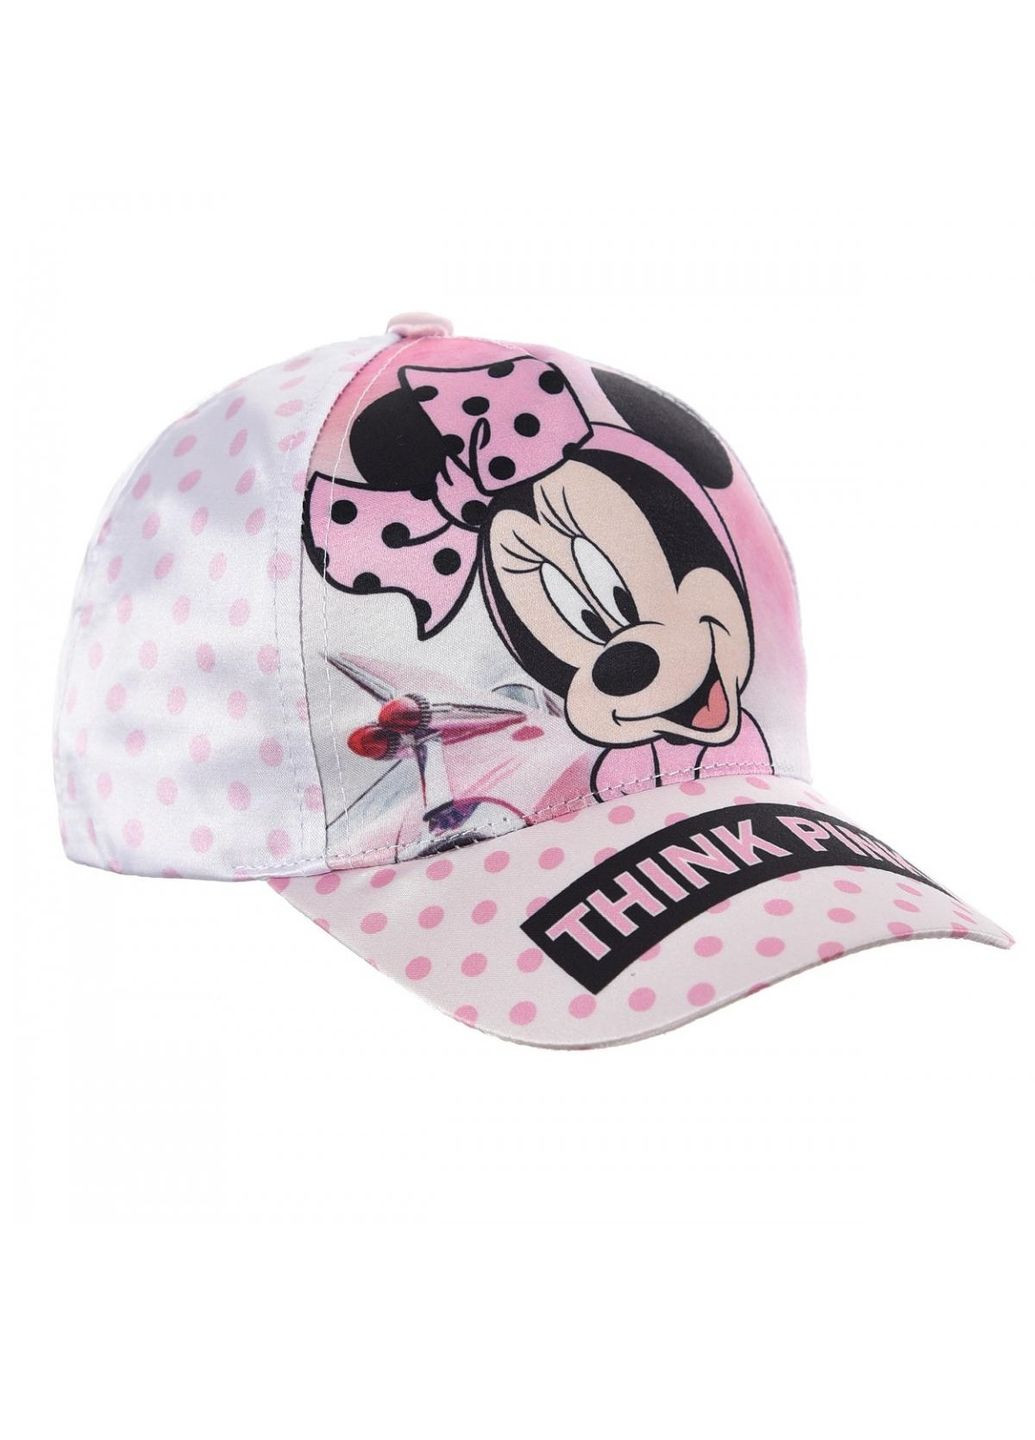 Кепка Minnie Mouse (Минни Маус) UE40271 EU Disney кепка (290887971)